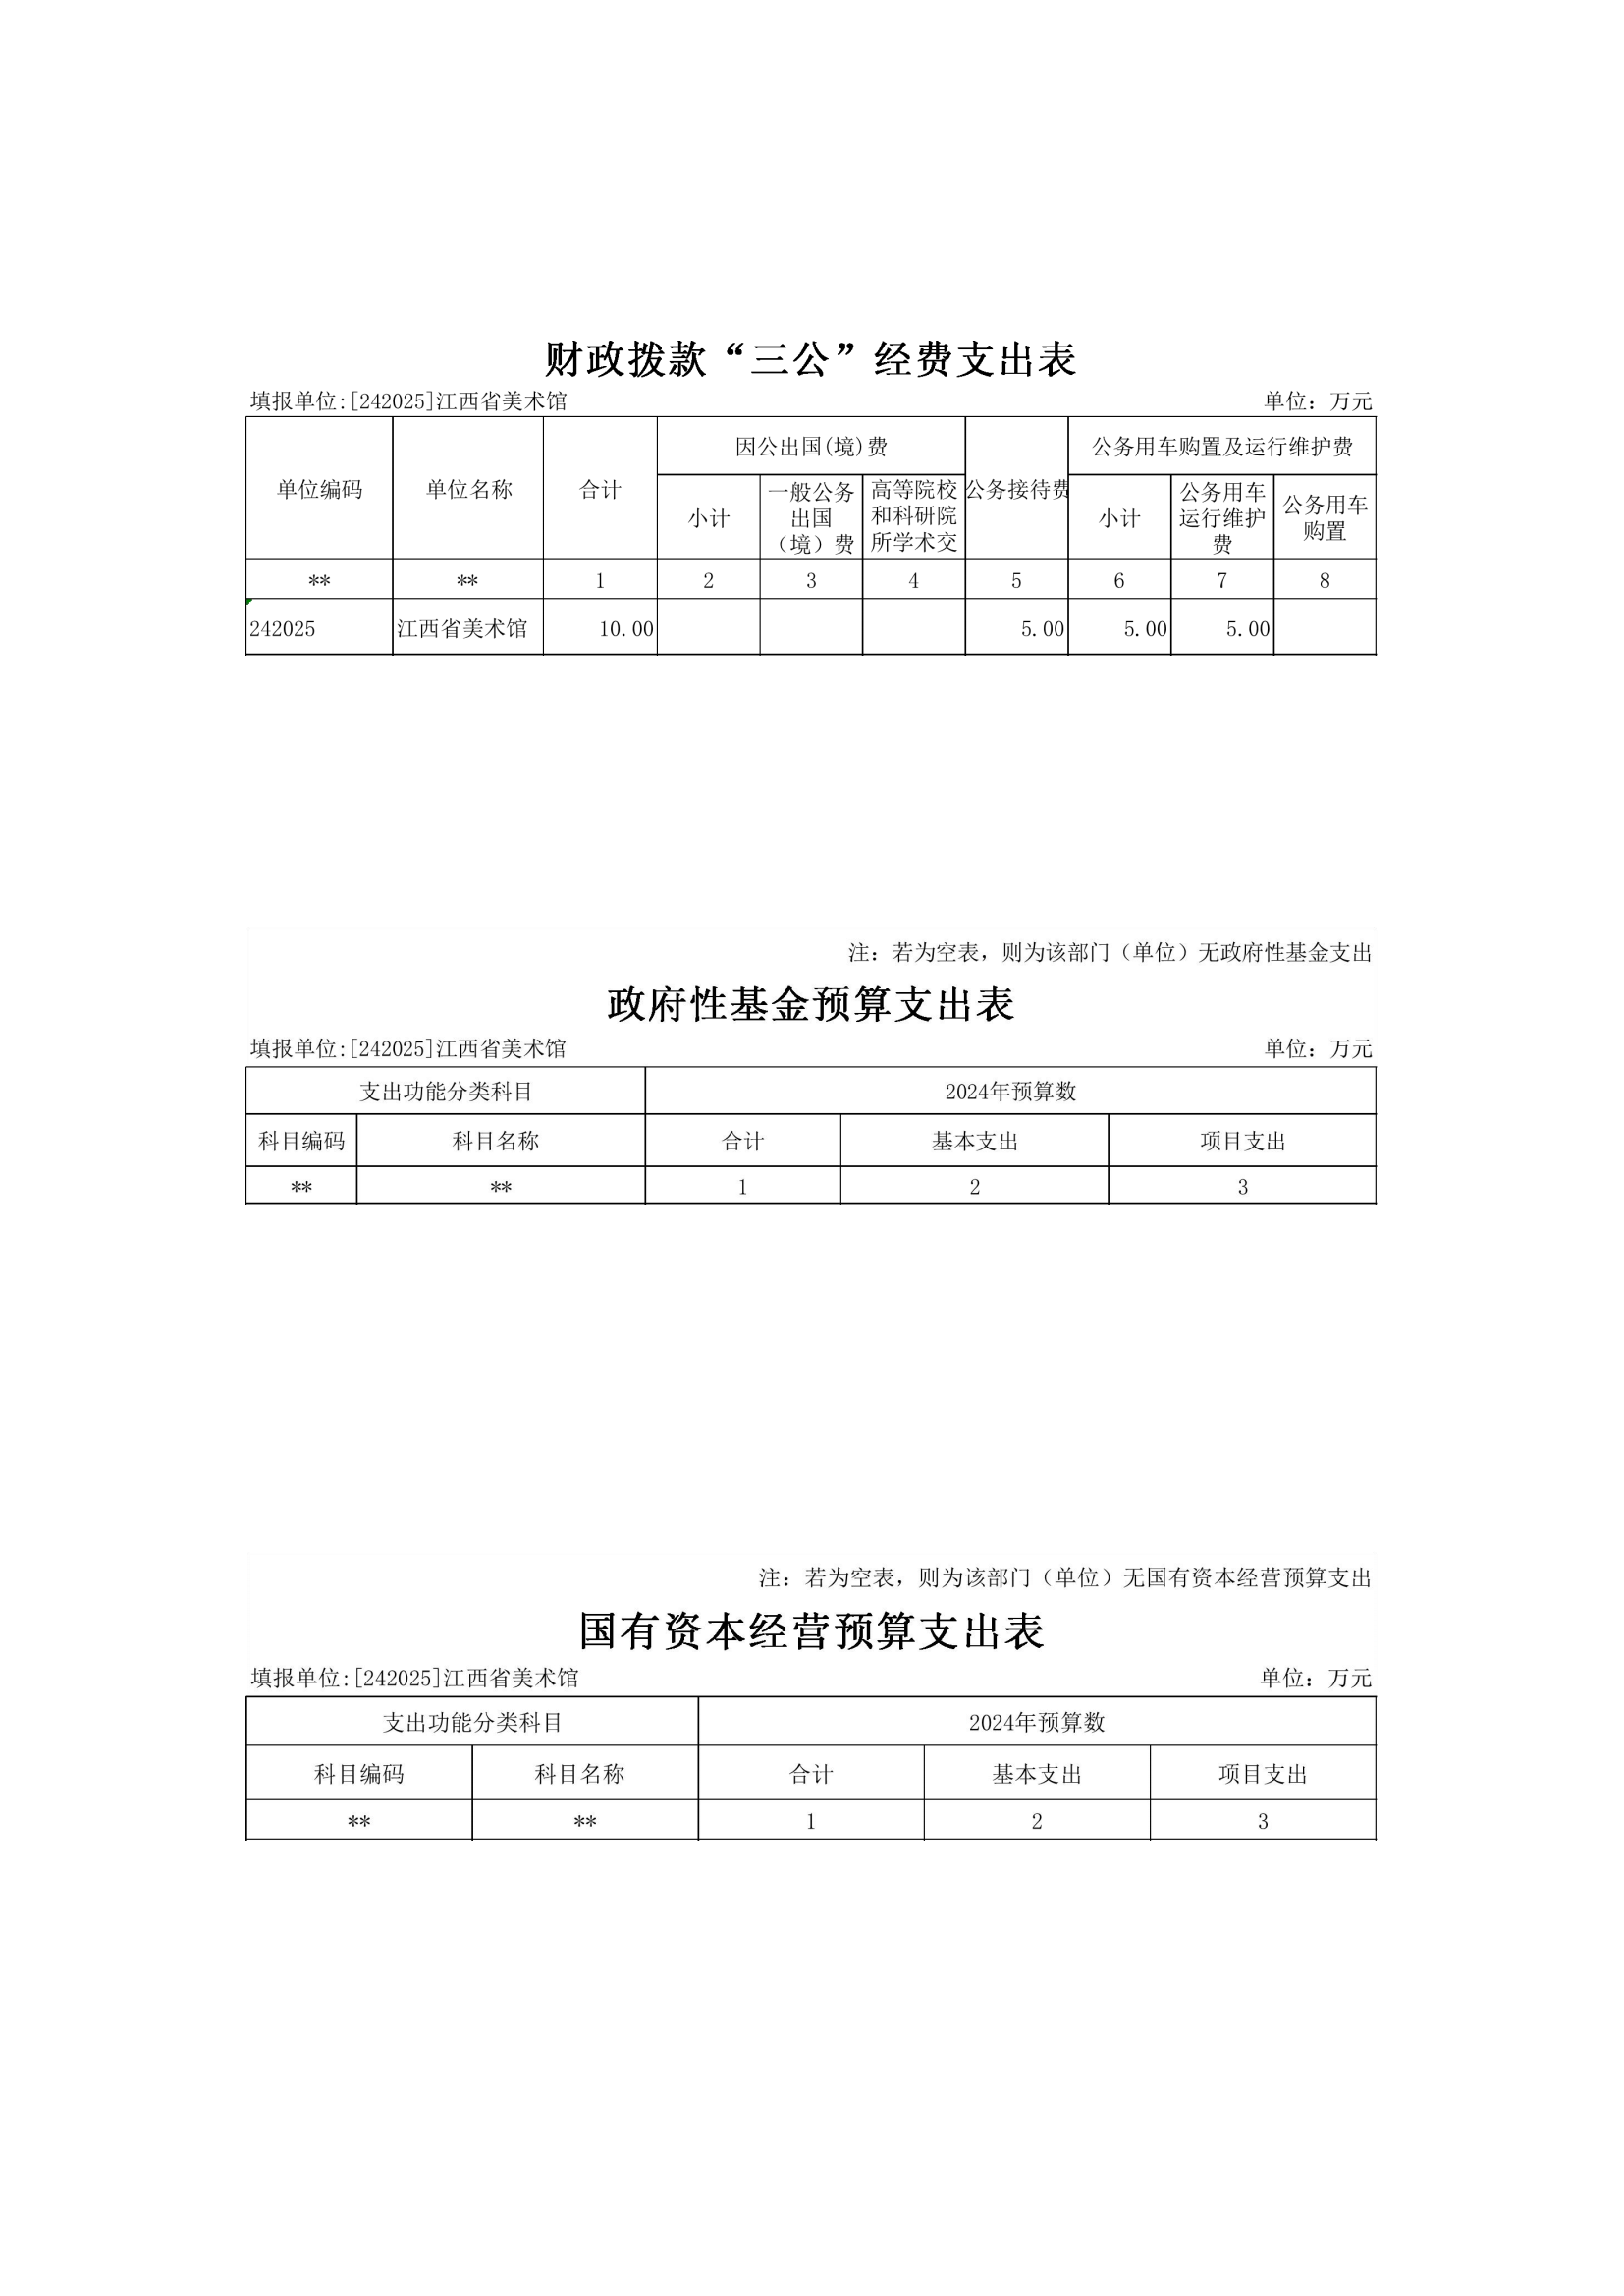 江西省美术馆2024年预算公开(正式)(1)_05.png